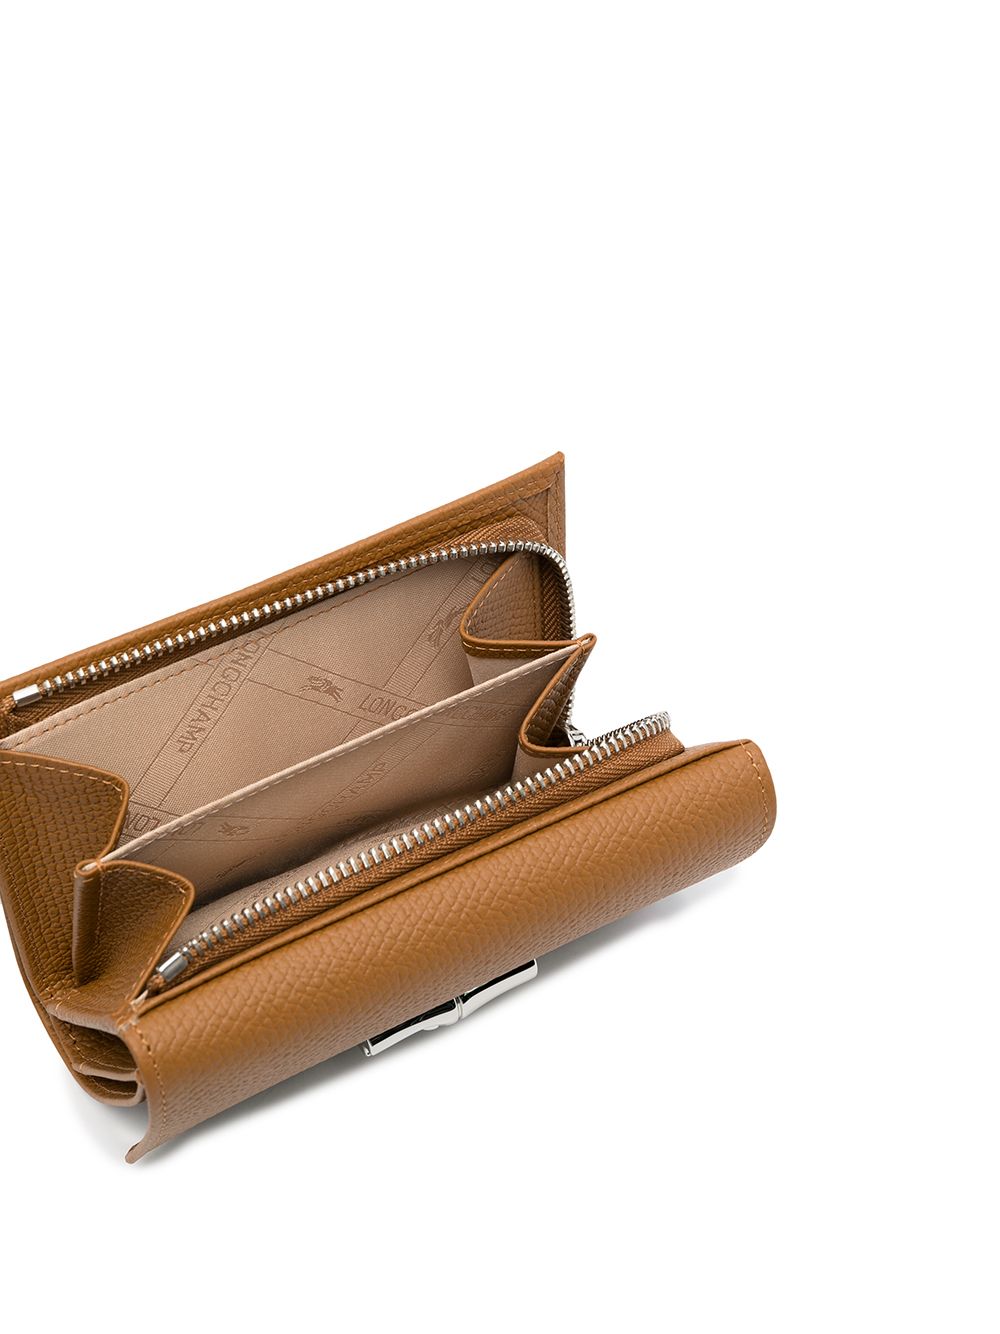 фото Longchamp кошелек roseau compact